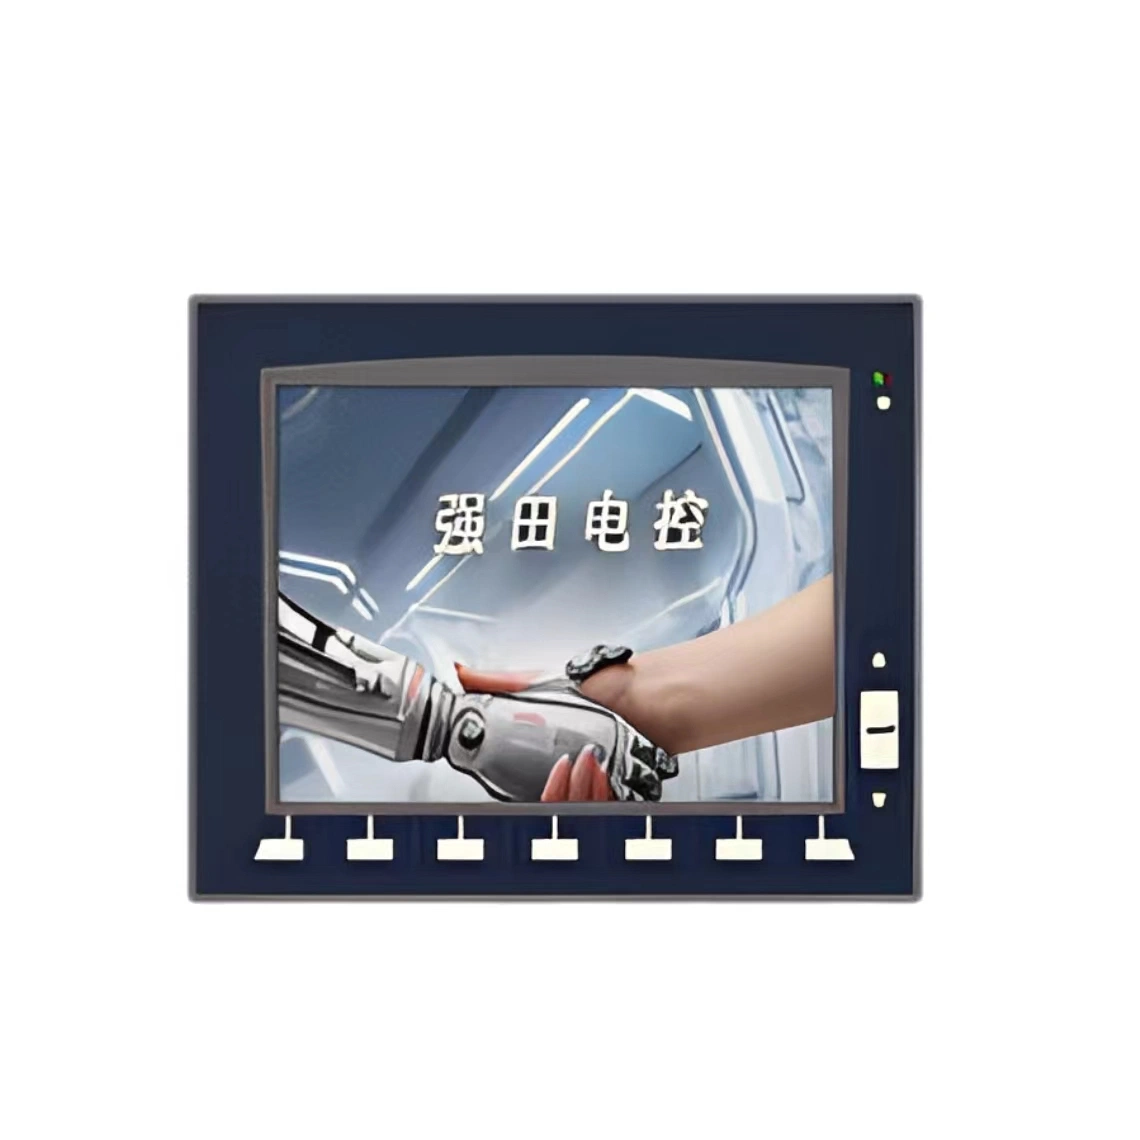 شاشة عرض التحكم الكهربائي شاشة عرض معلومات الإنذار المطبقة على الماكينات الصناعية